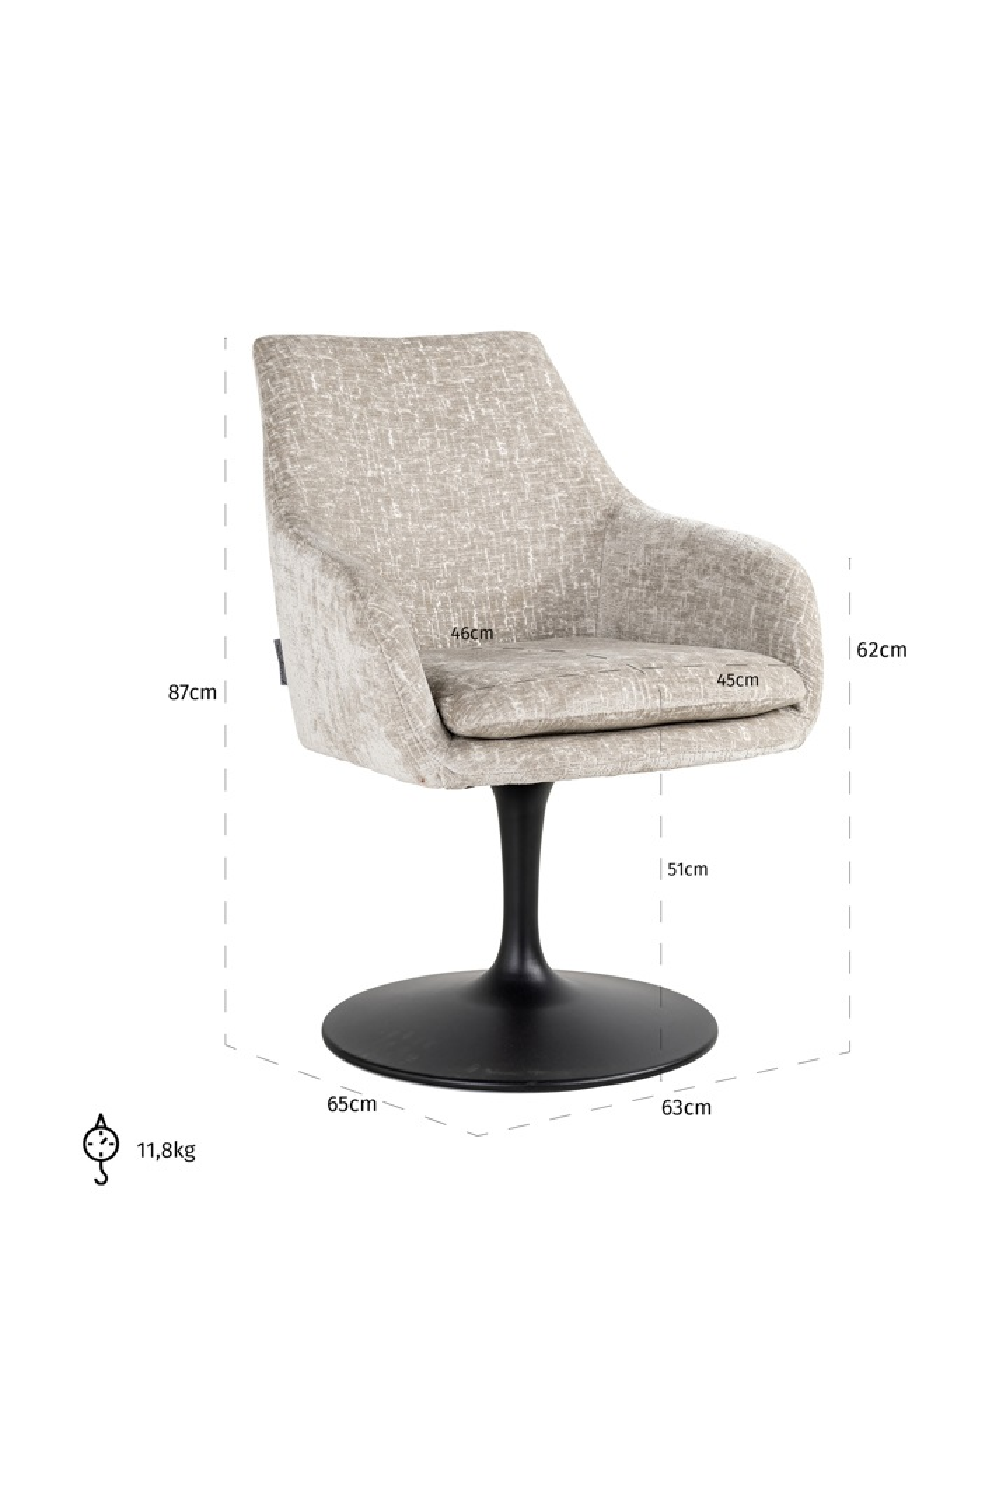 Pedestal Upholstered Swivel Chair | OROA Marlon | Oroa.com